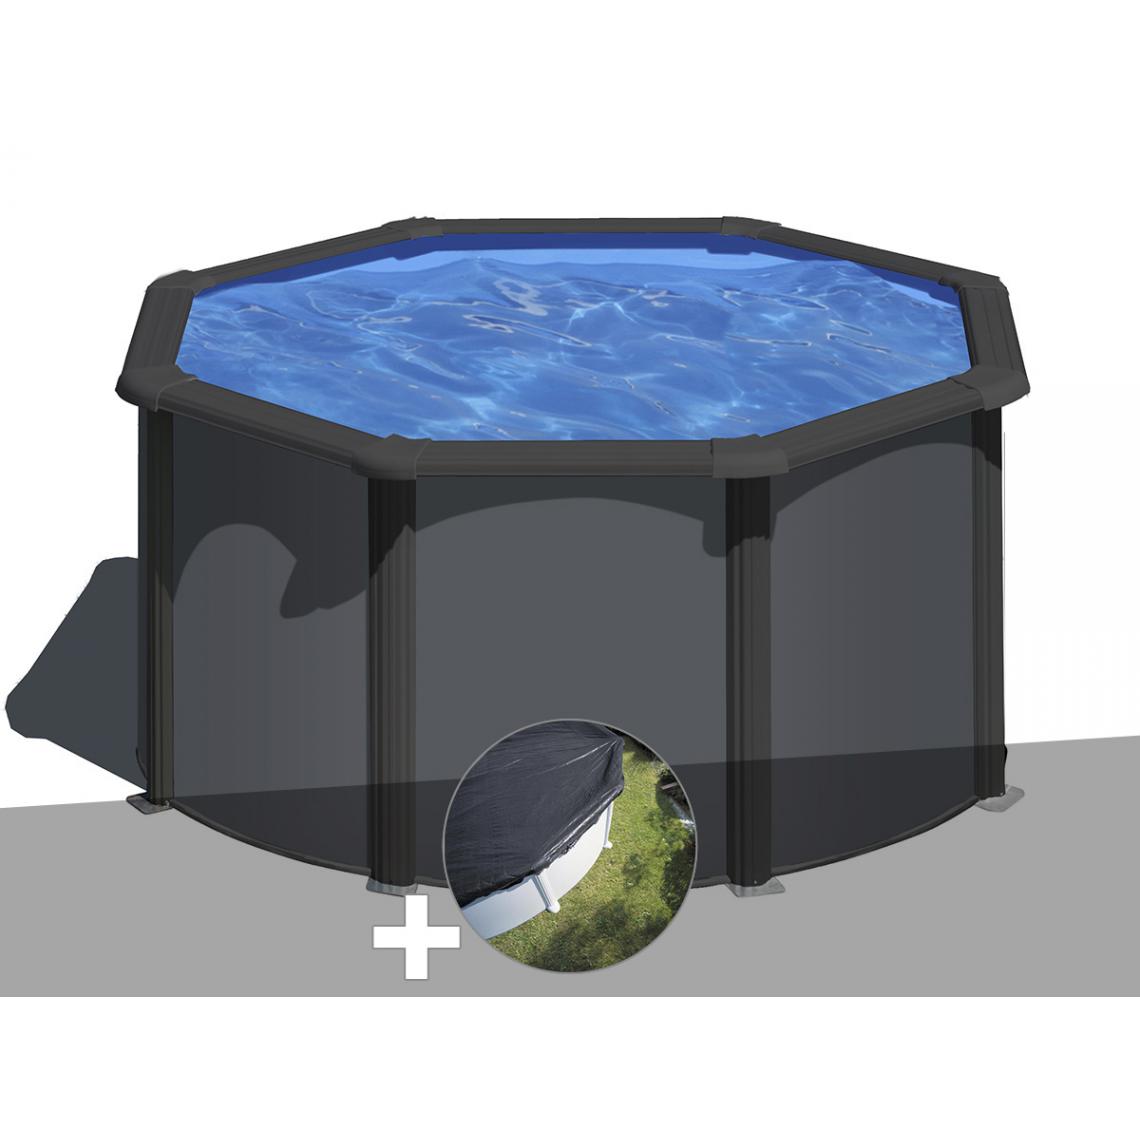 Gre - Kit piscine acier gris anthracite Gré Louko ronde 2,60 x 1,22 m + Bâche d'hivernage - Piscines acier et résine